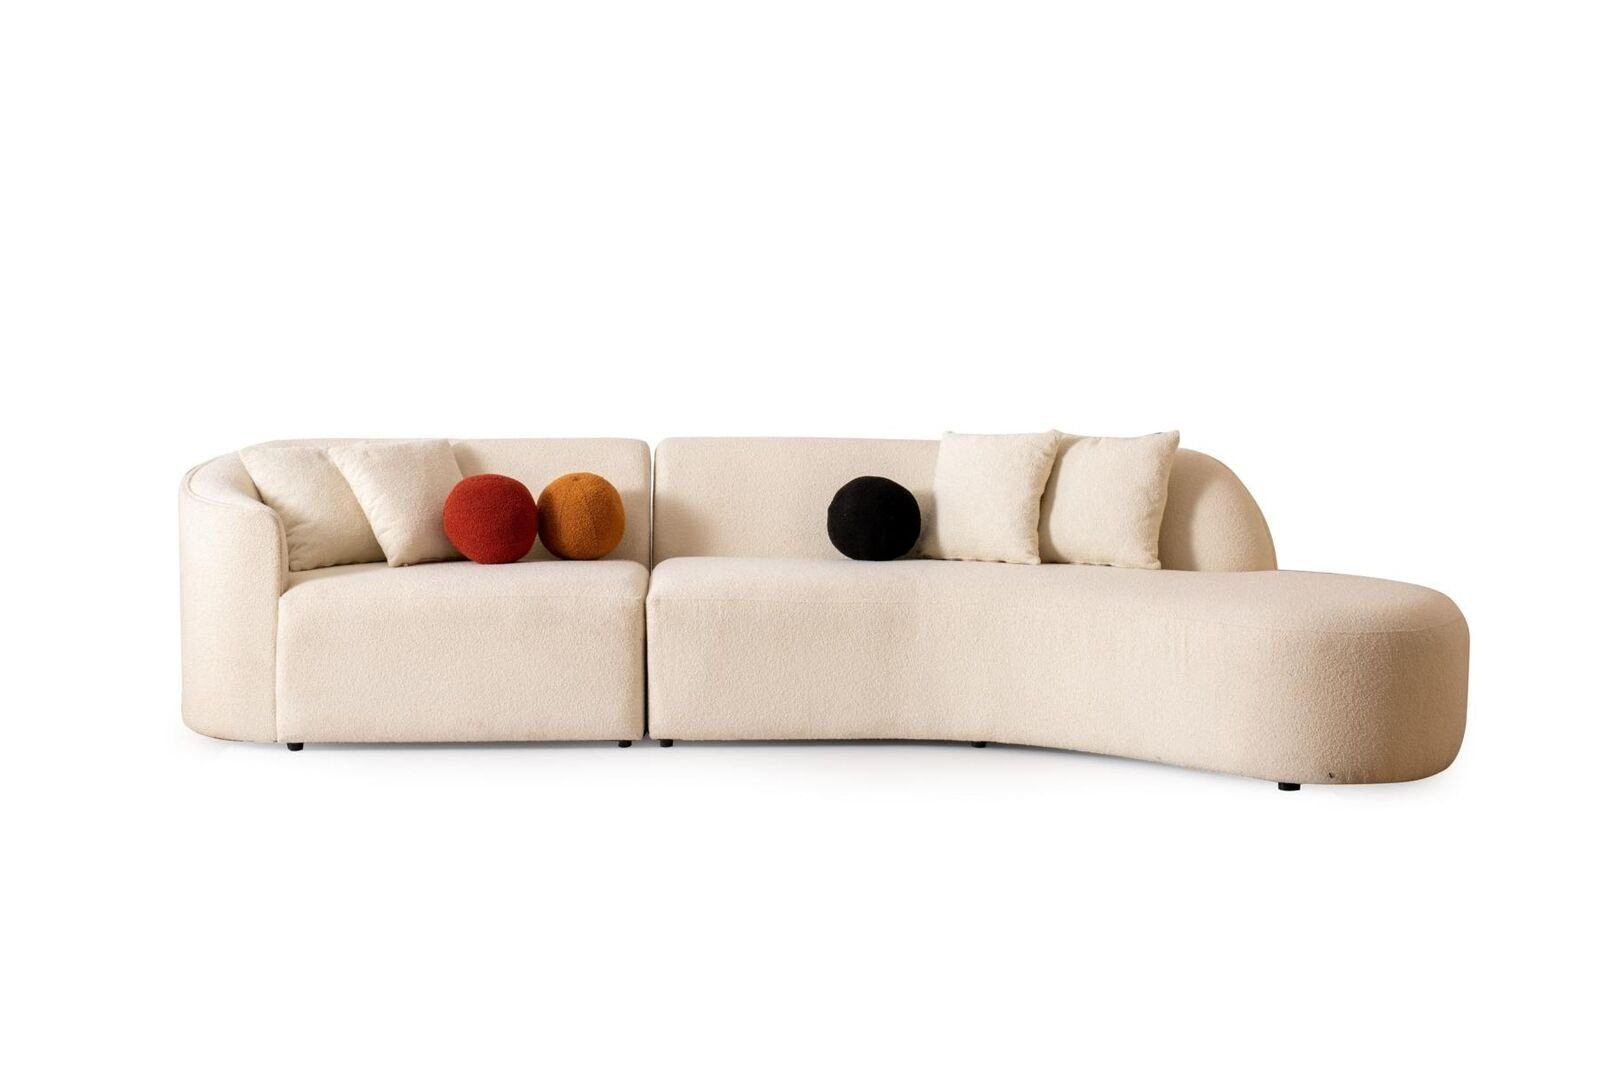 JVmoebel Ecksofa Weiß Couch Sofa Ecksofa L-form Modern Möbel wohnzimmer Eckgarnitur, 1 Teile, Made in Europa